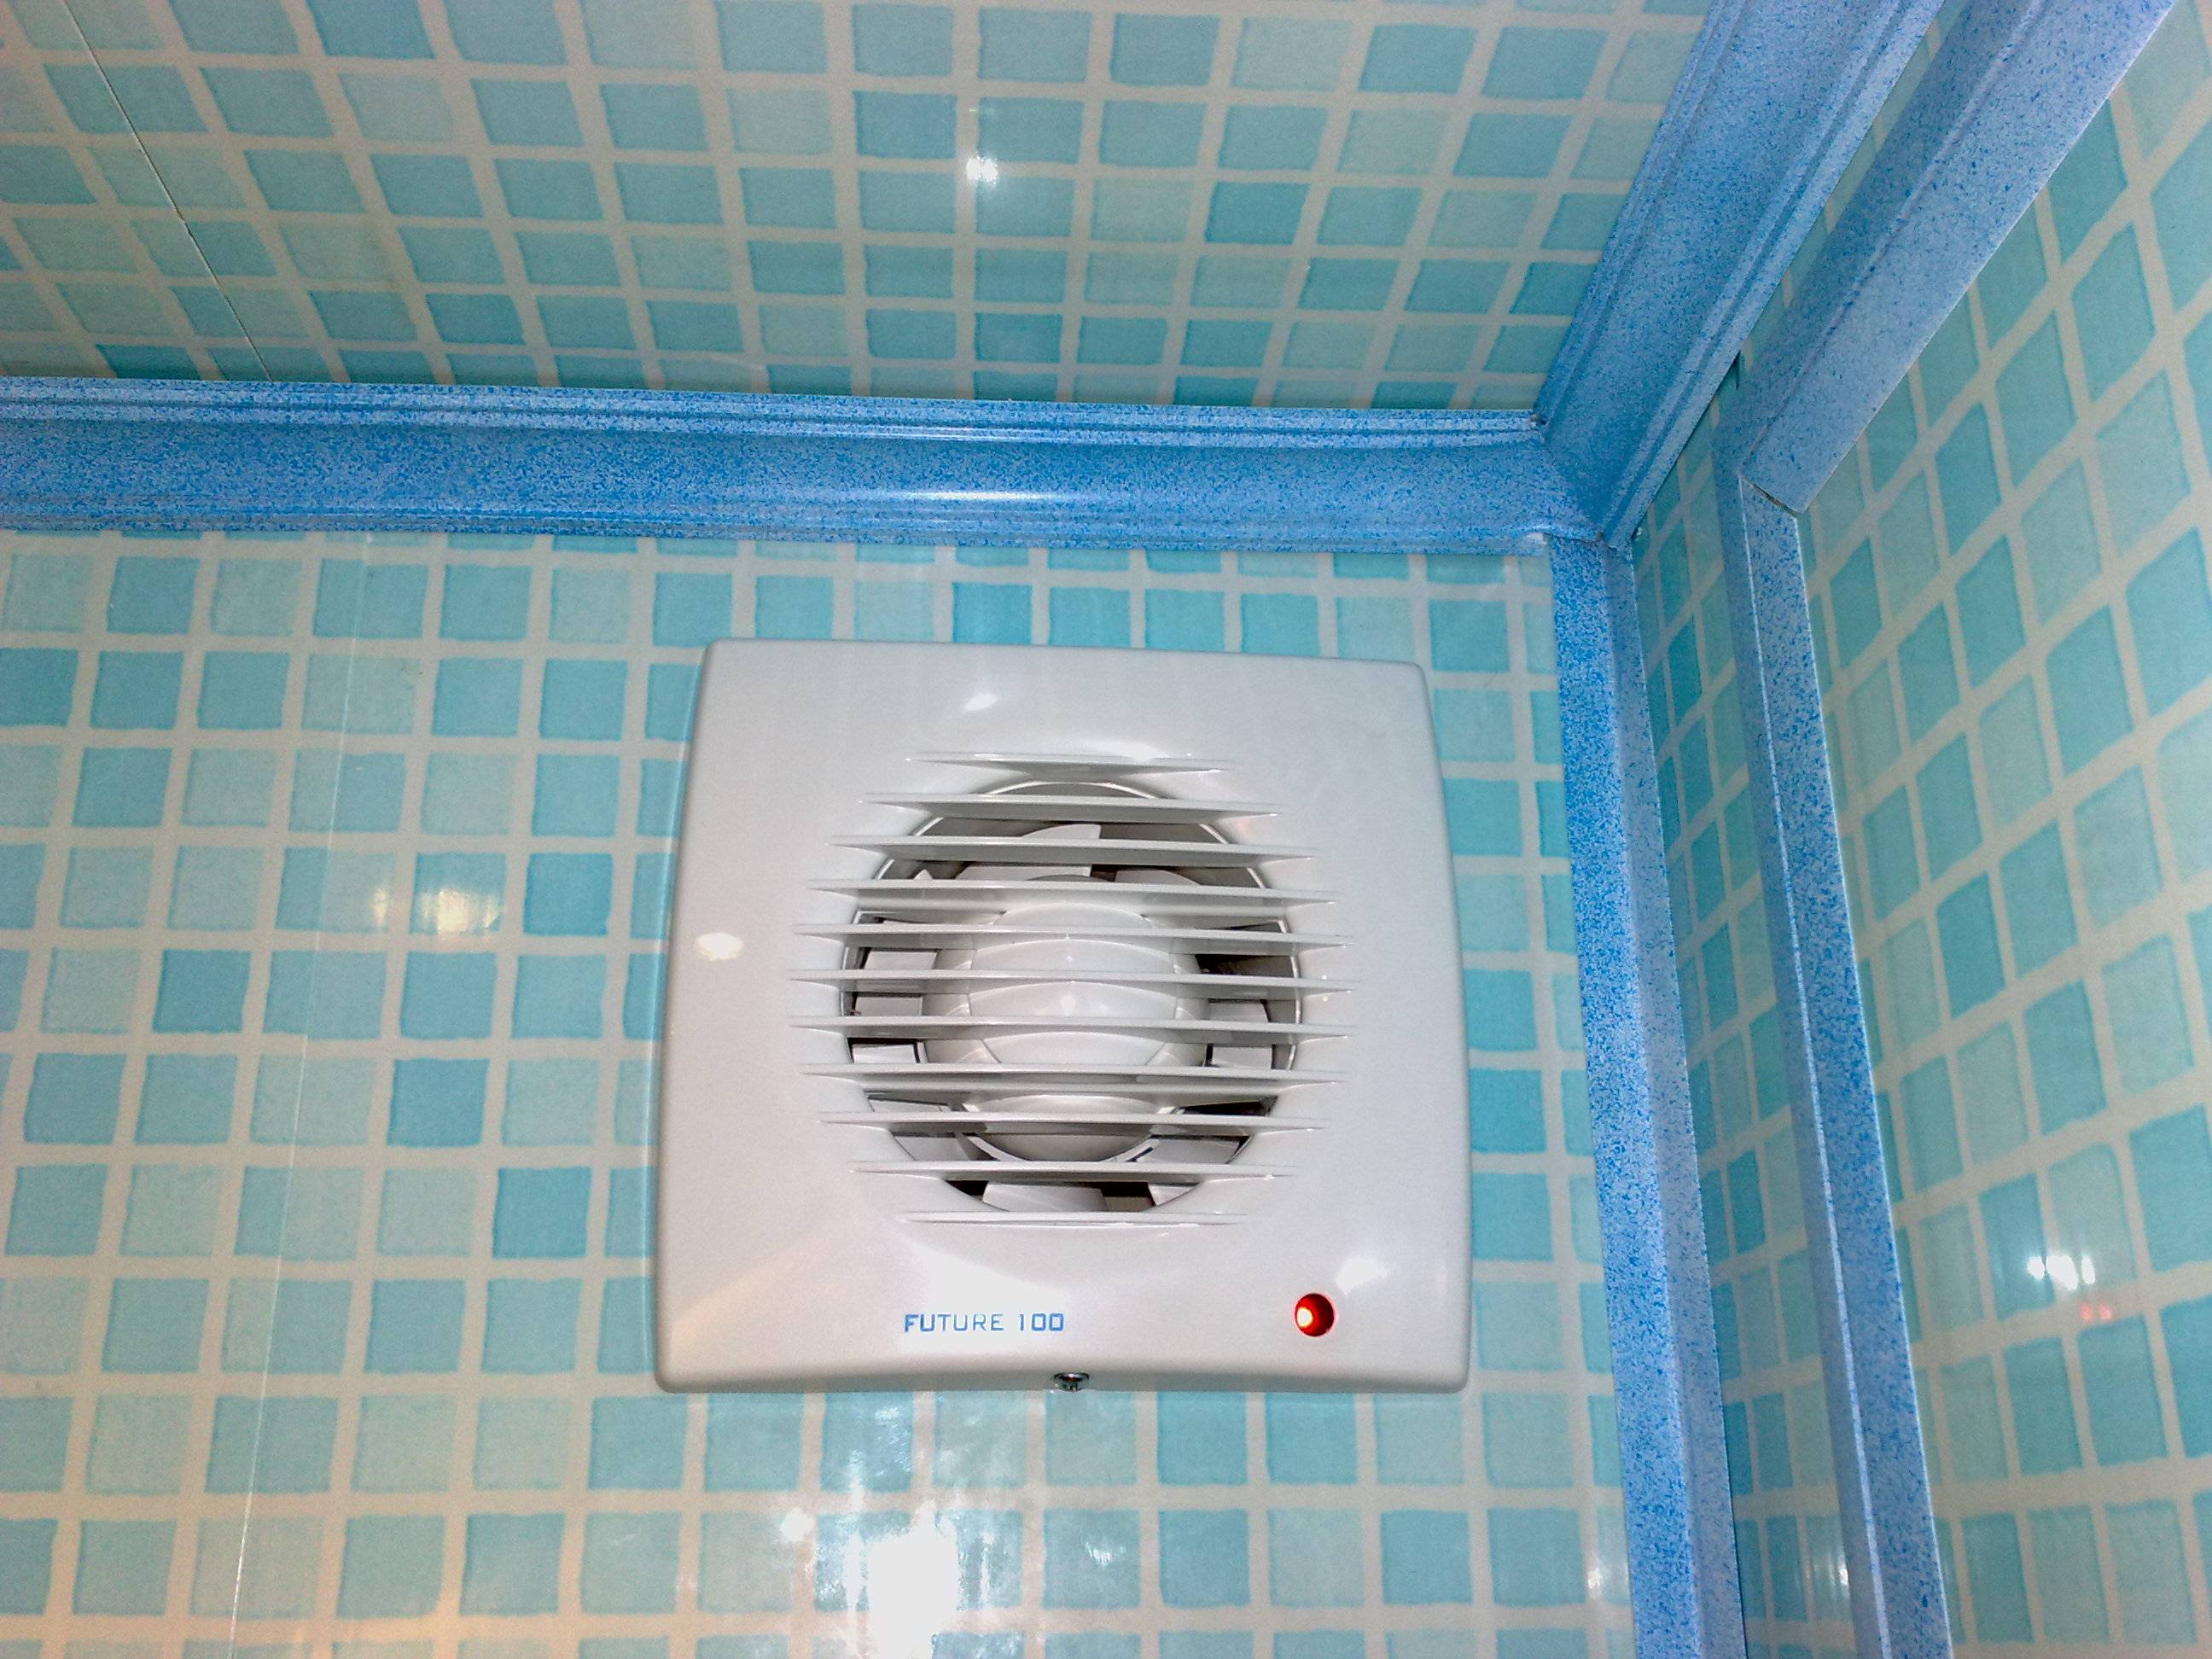 Покупаем вентилятор для ванной: 4 важные рекомендации или выбираем качество!